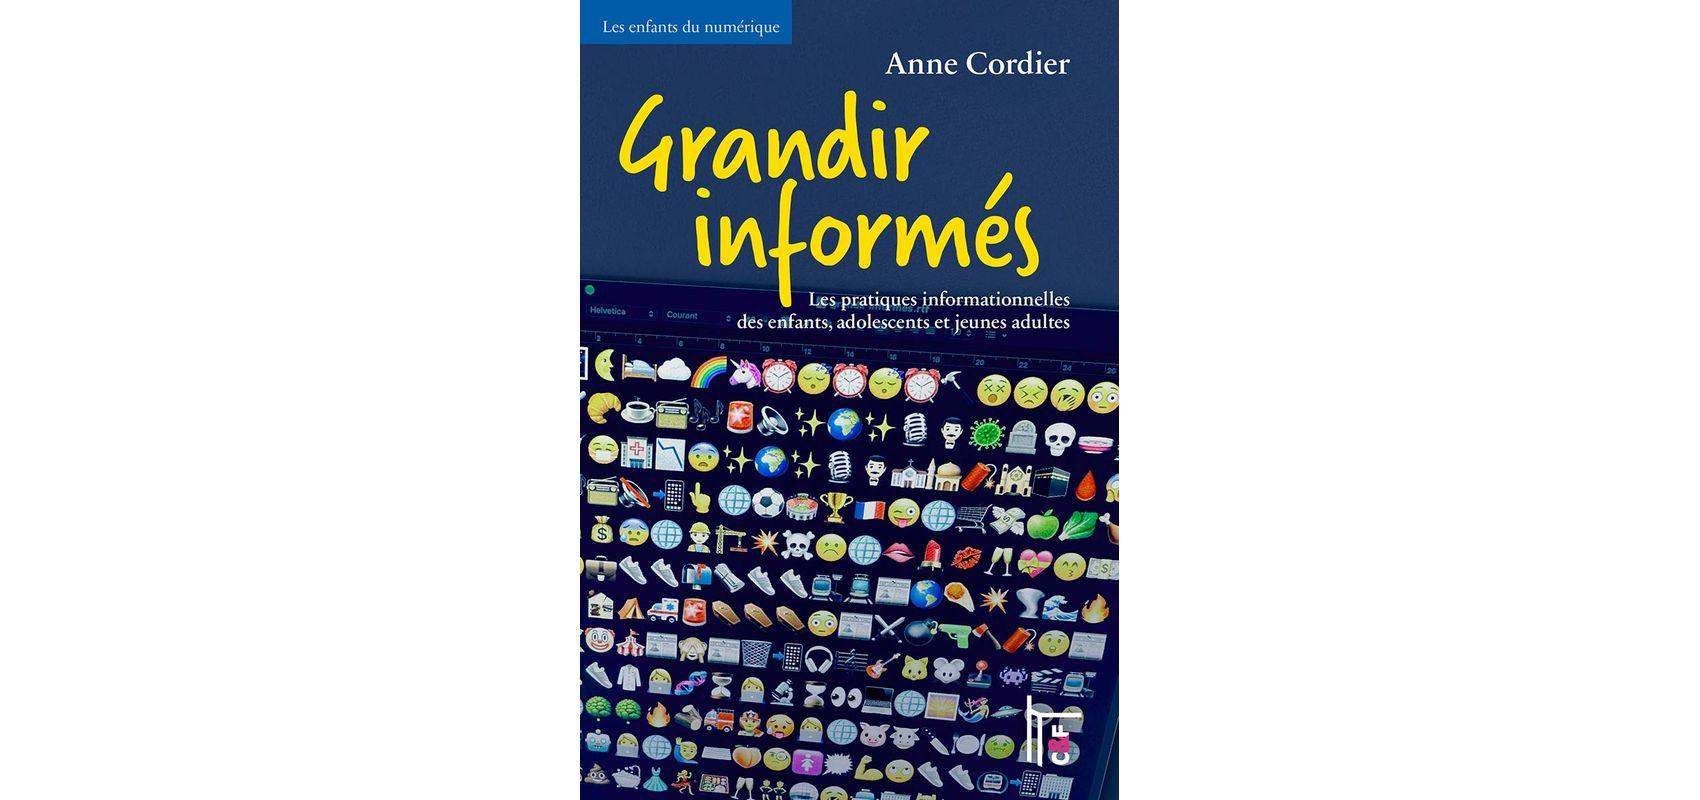 Couverture du livre « Grandir informés » d'Anne Cordier -  - D.R.